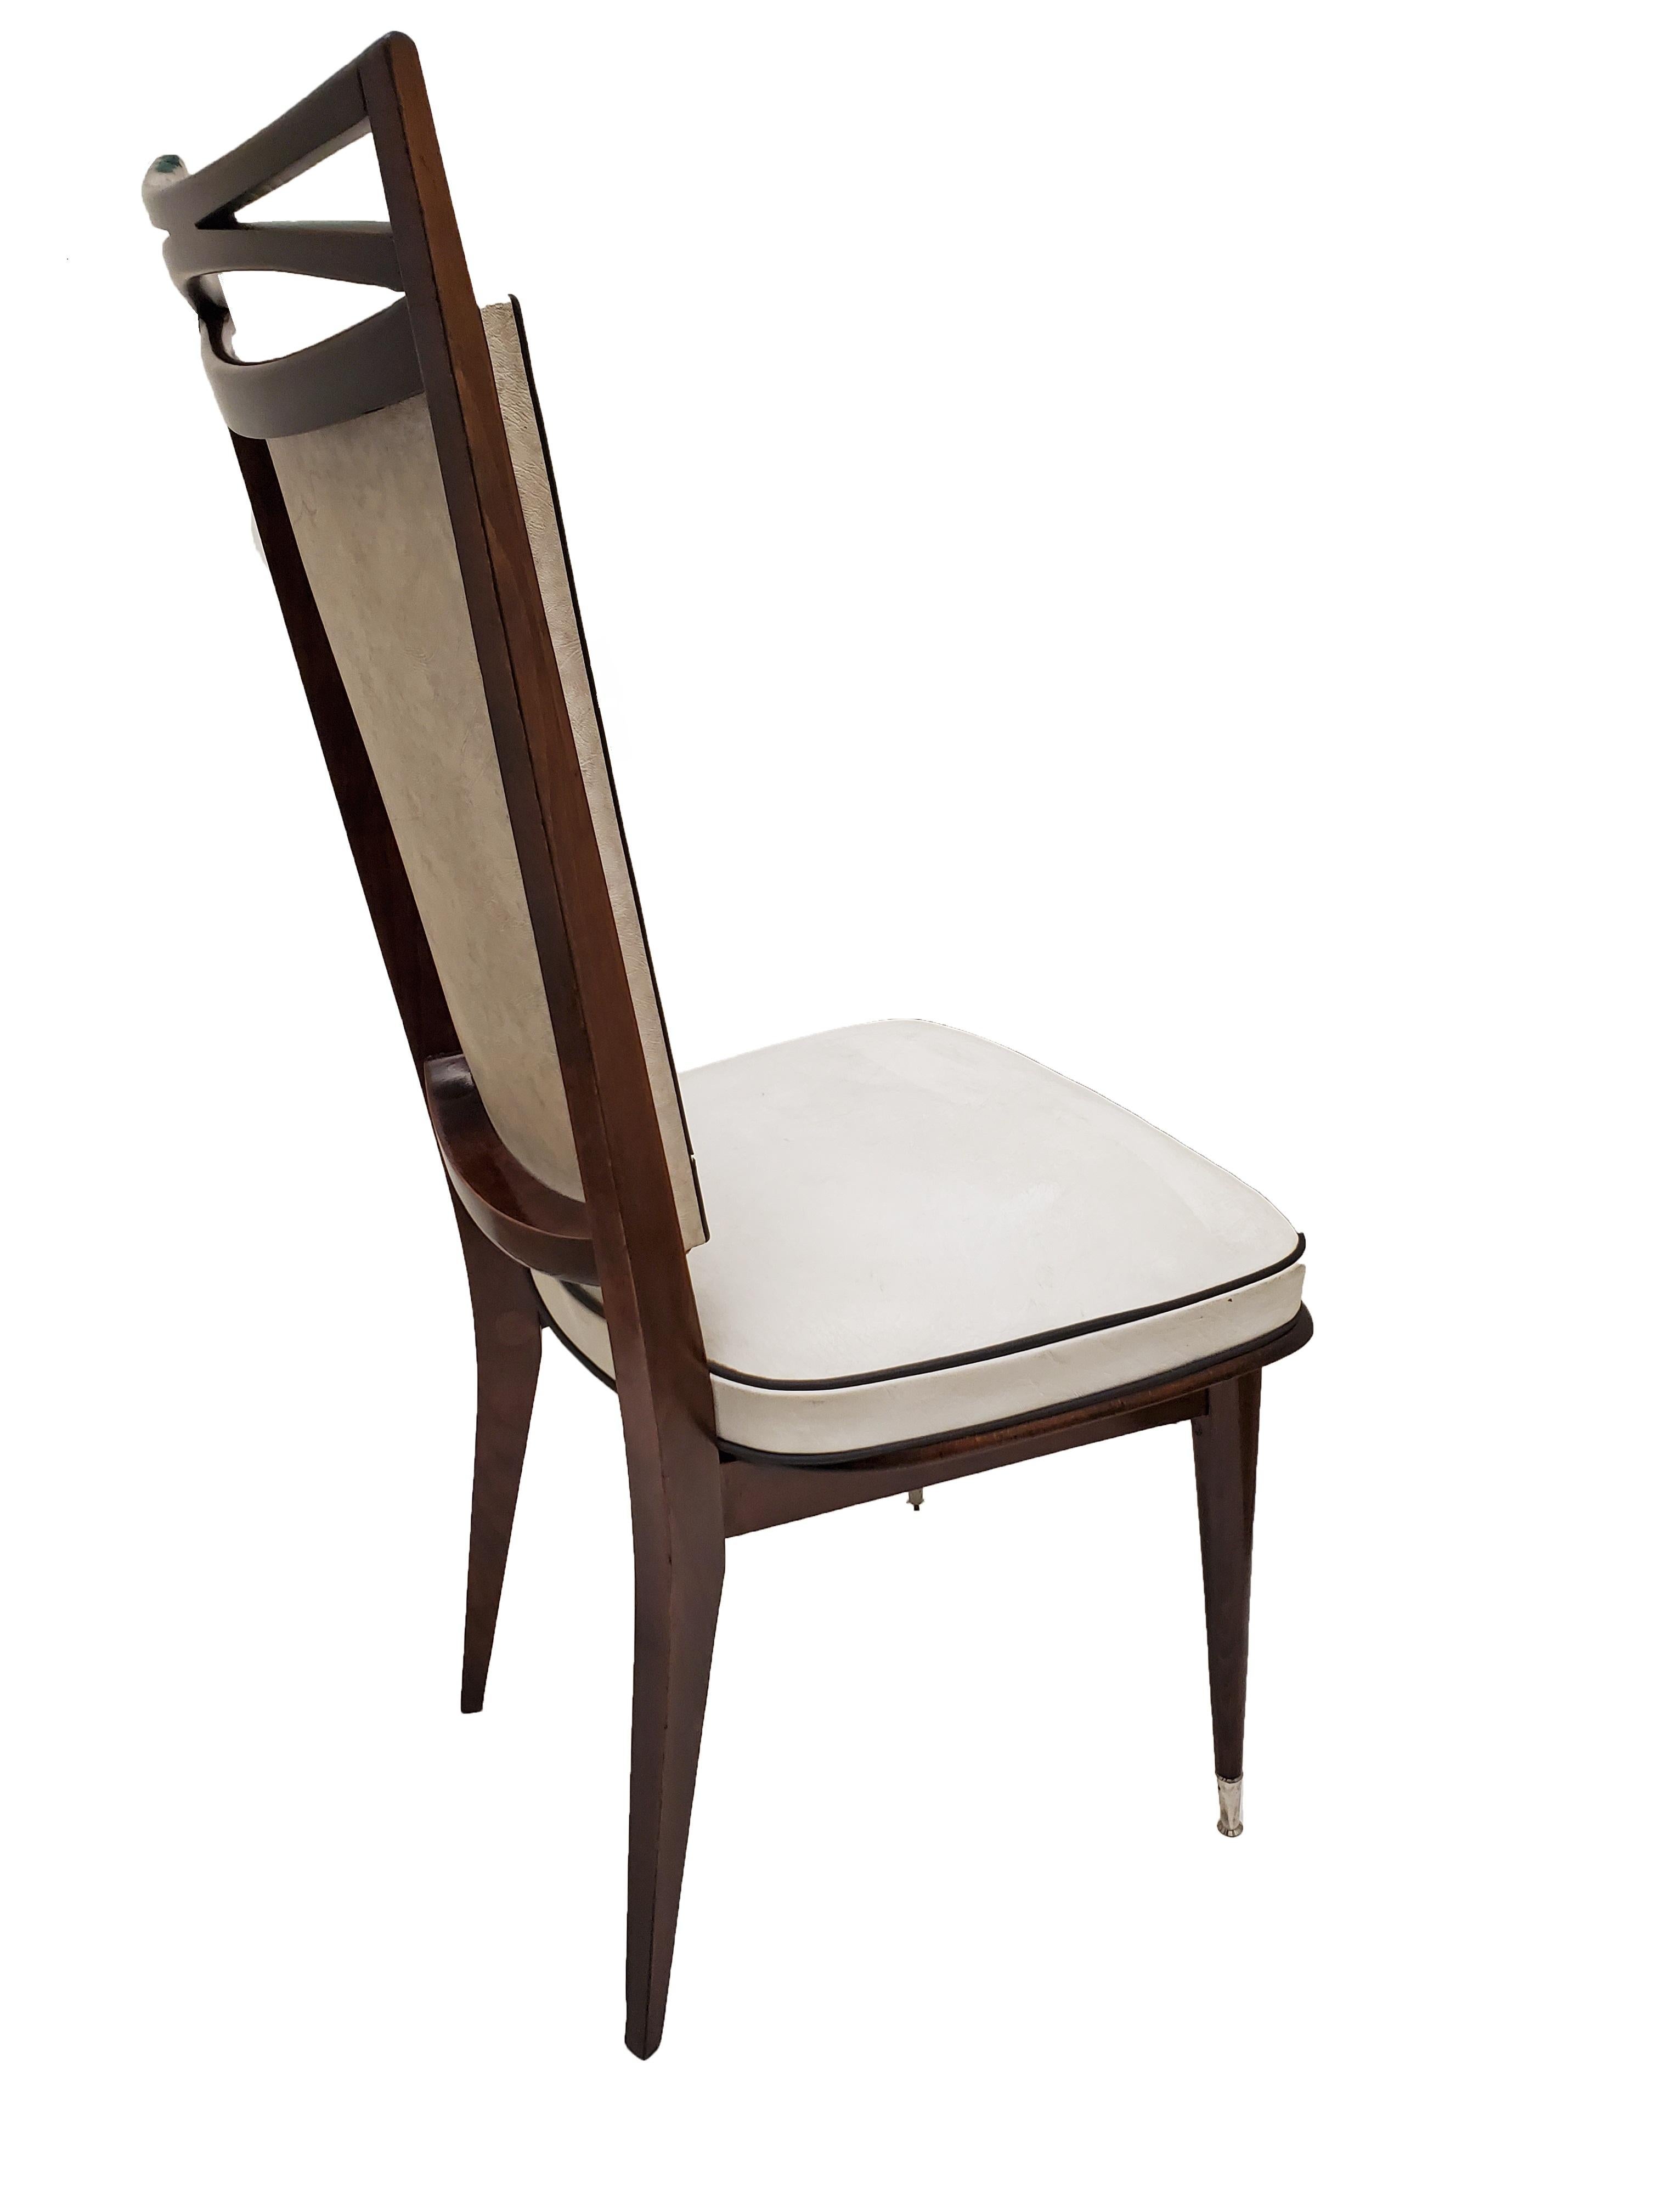 Ein Paar originaler französischer modernistischer Ess- oder Beistellstühle mit einem offenen, luftigen 